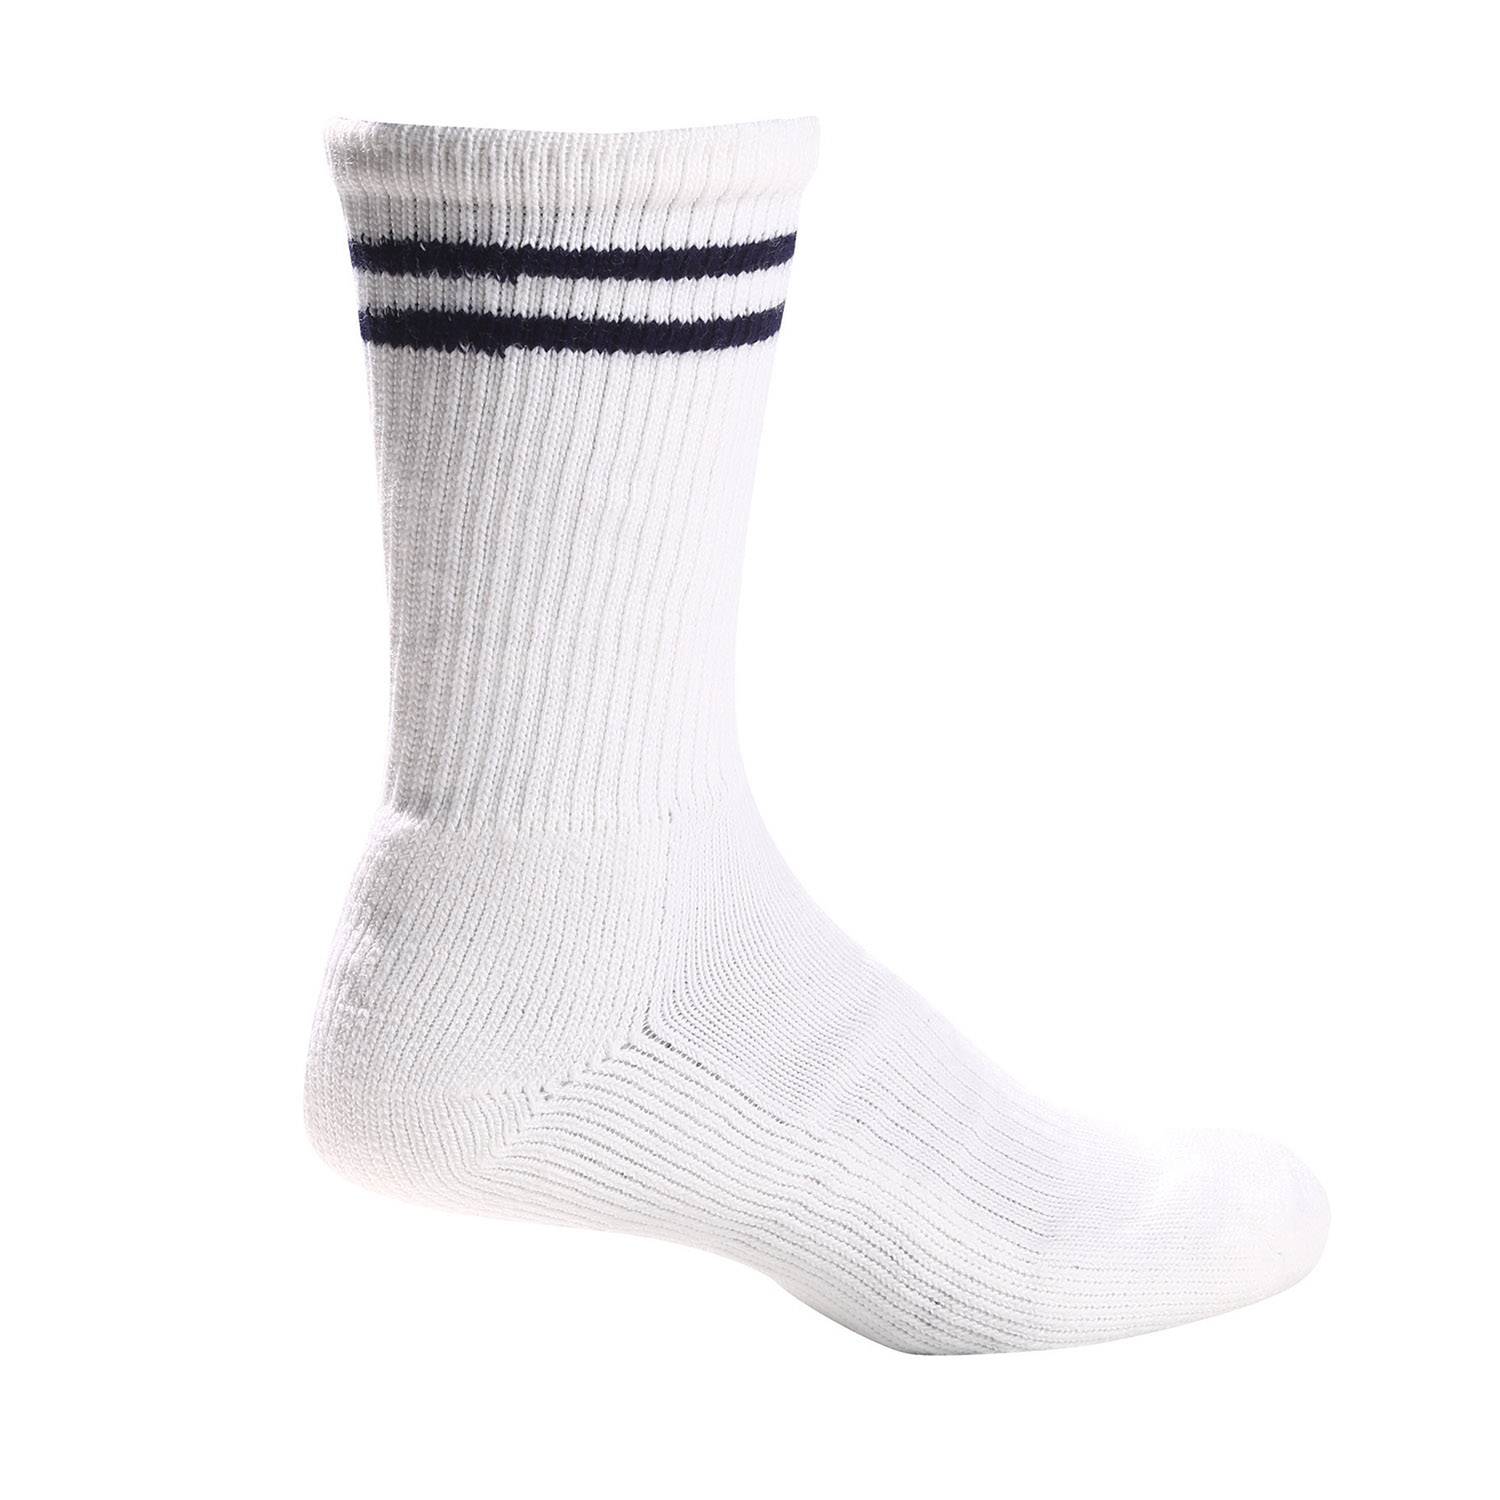 White Acrylic Crew Length Sock - XLarge